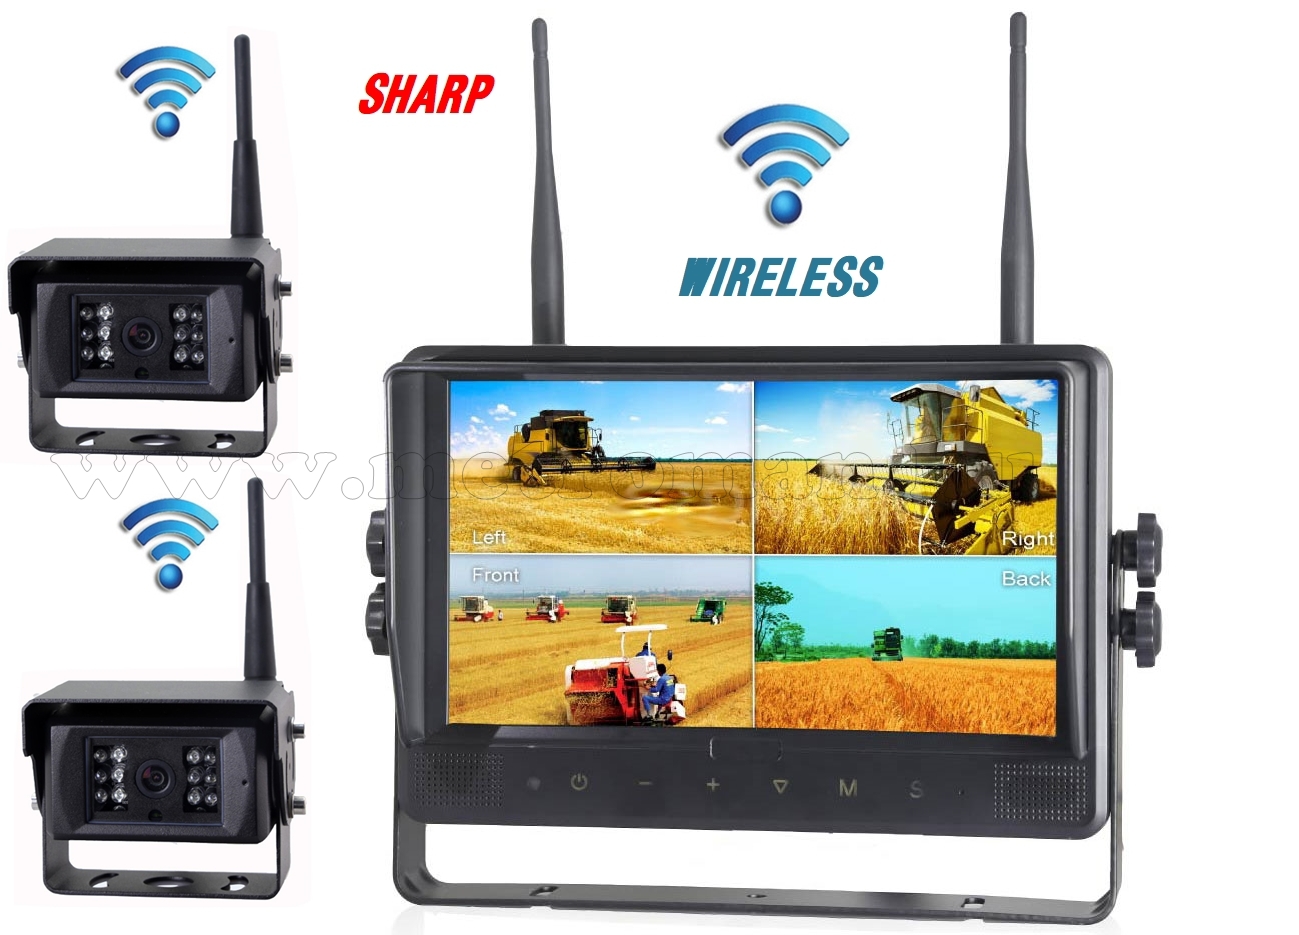 Ipari kivitelű, vezeték nélküli tolatókamera szett, Sharp Quad LCD 9" monitorral és 2 db Sharp Vision tolatókamerával DW900138QC-DW671X2